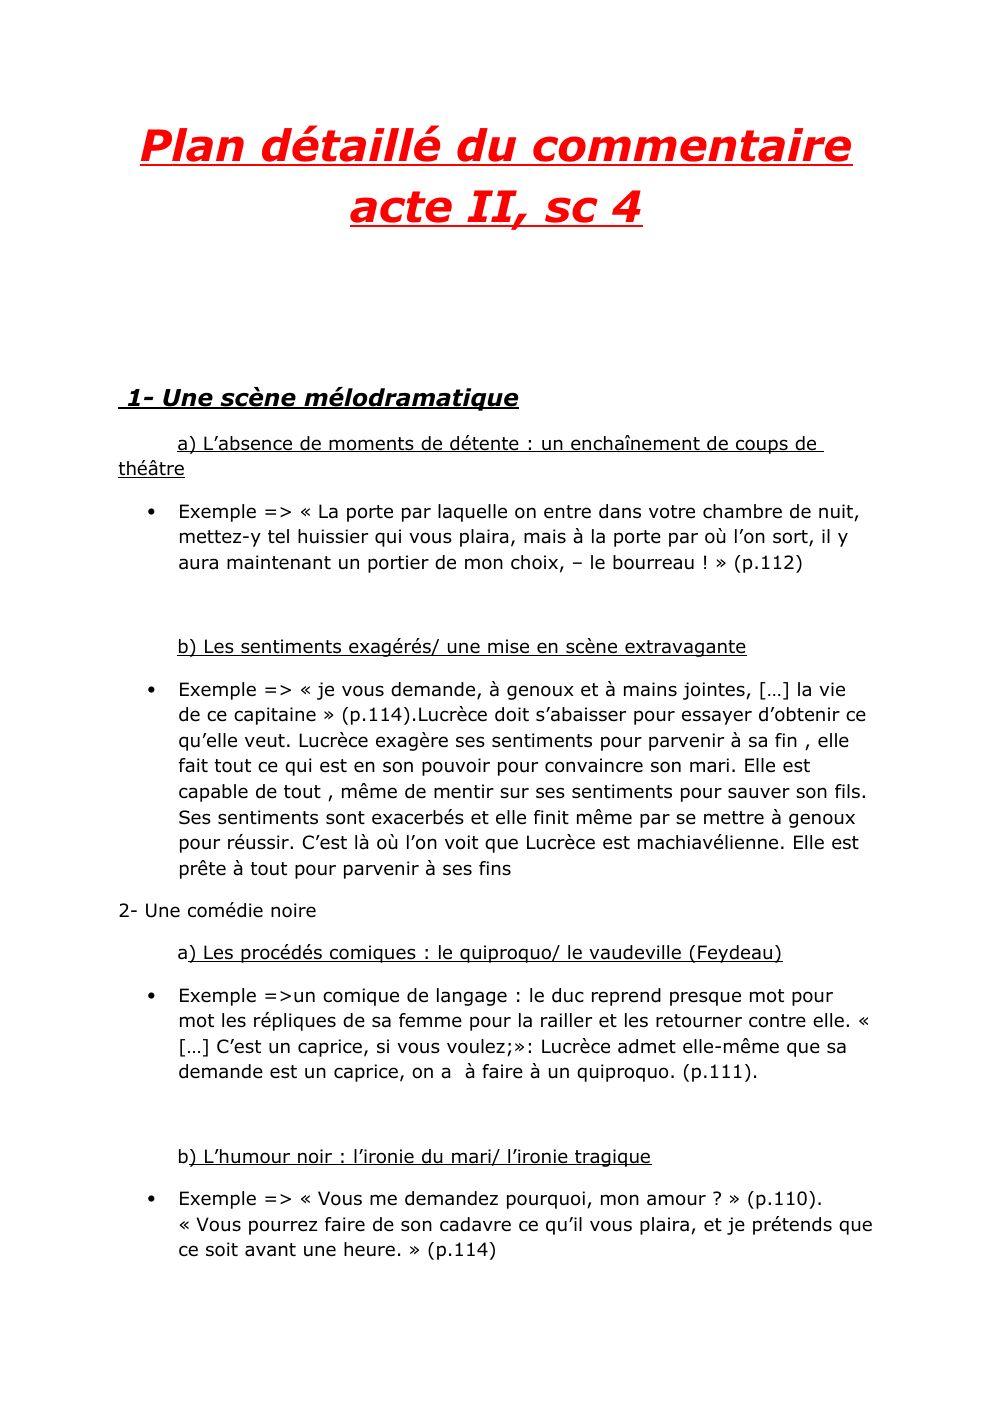 Prévisualisation du document Plan détaillé du commentaire acte II scène 4 de Lucrèce Borgia